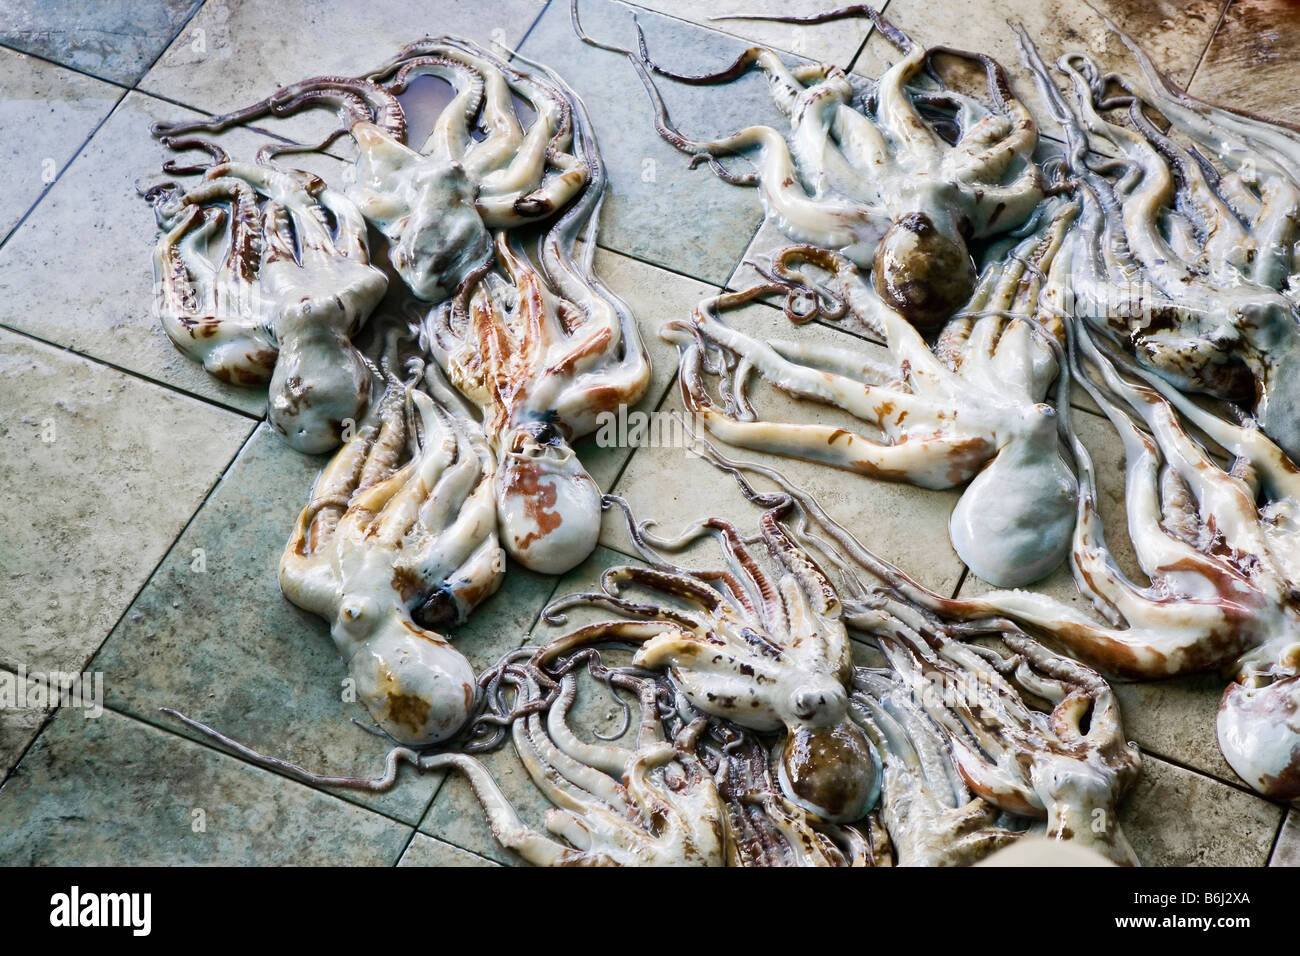 Fresche polpi stabilite per la vendita sul piano del principale mercato del pesce nel maschio (la capitale delle Maldive) Foto Stock